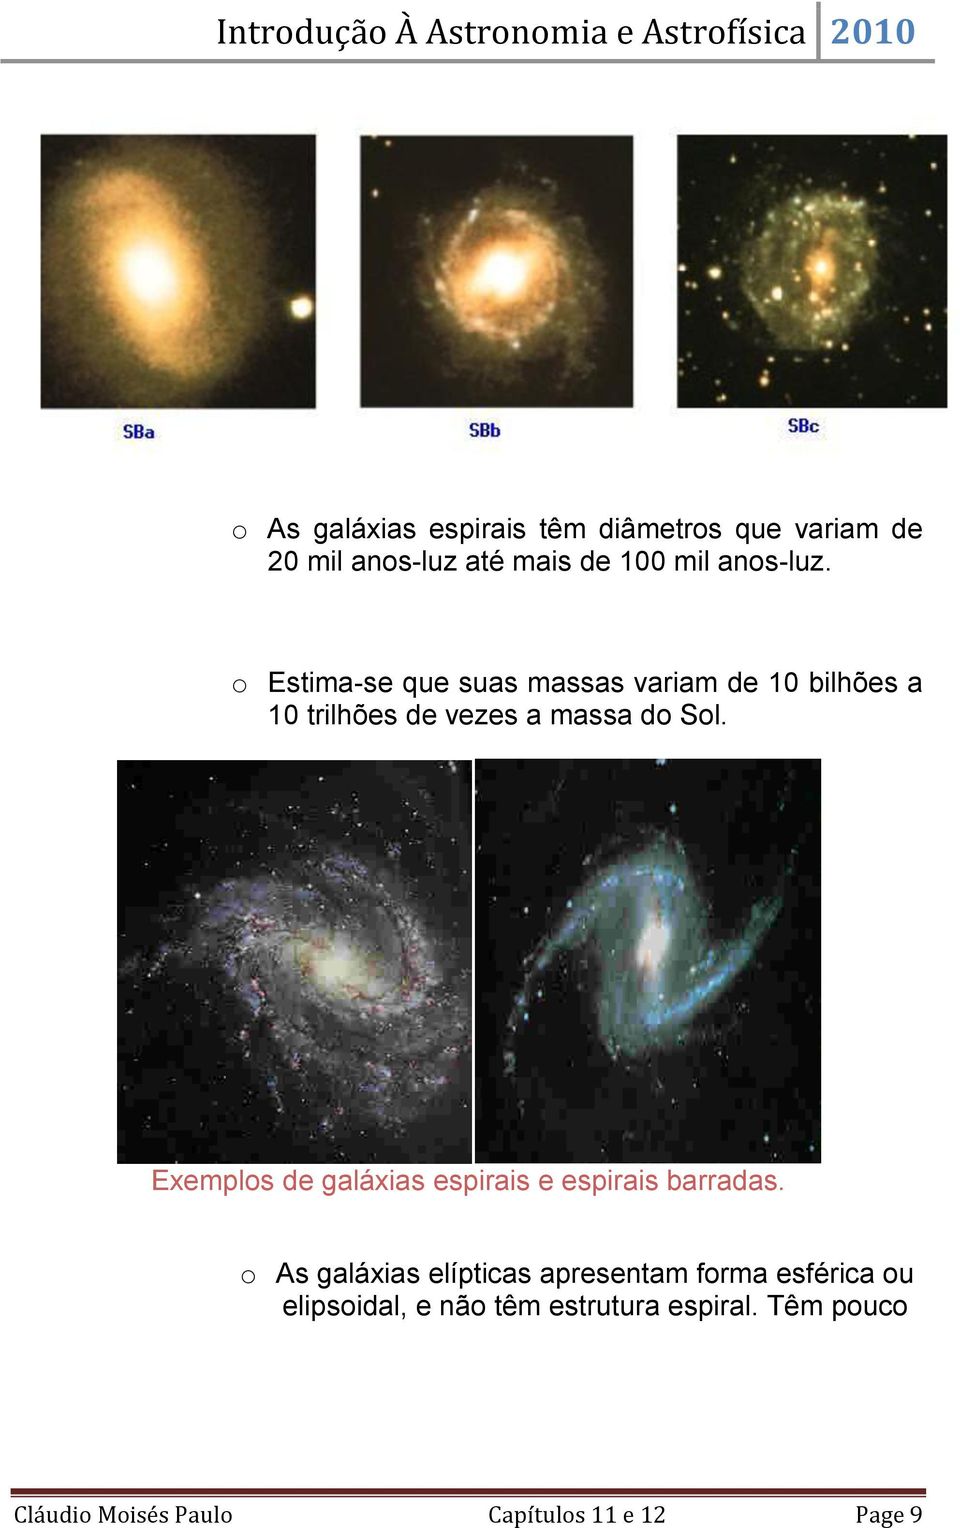 Exemplos de galáxias espirais e espirais barradas.